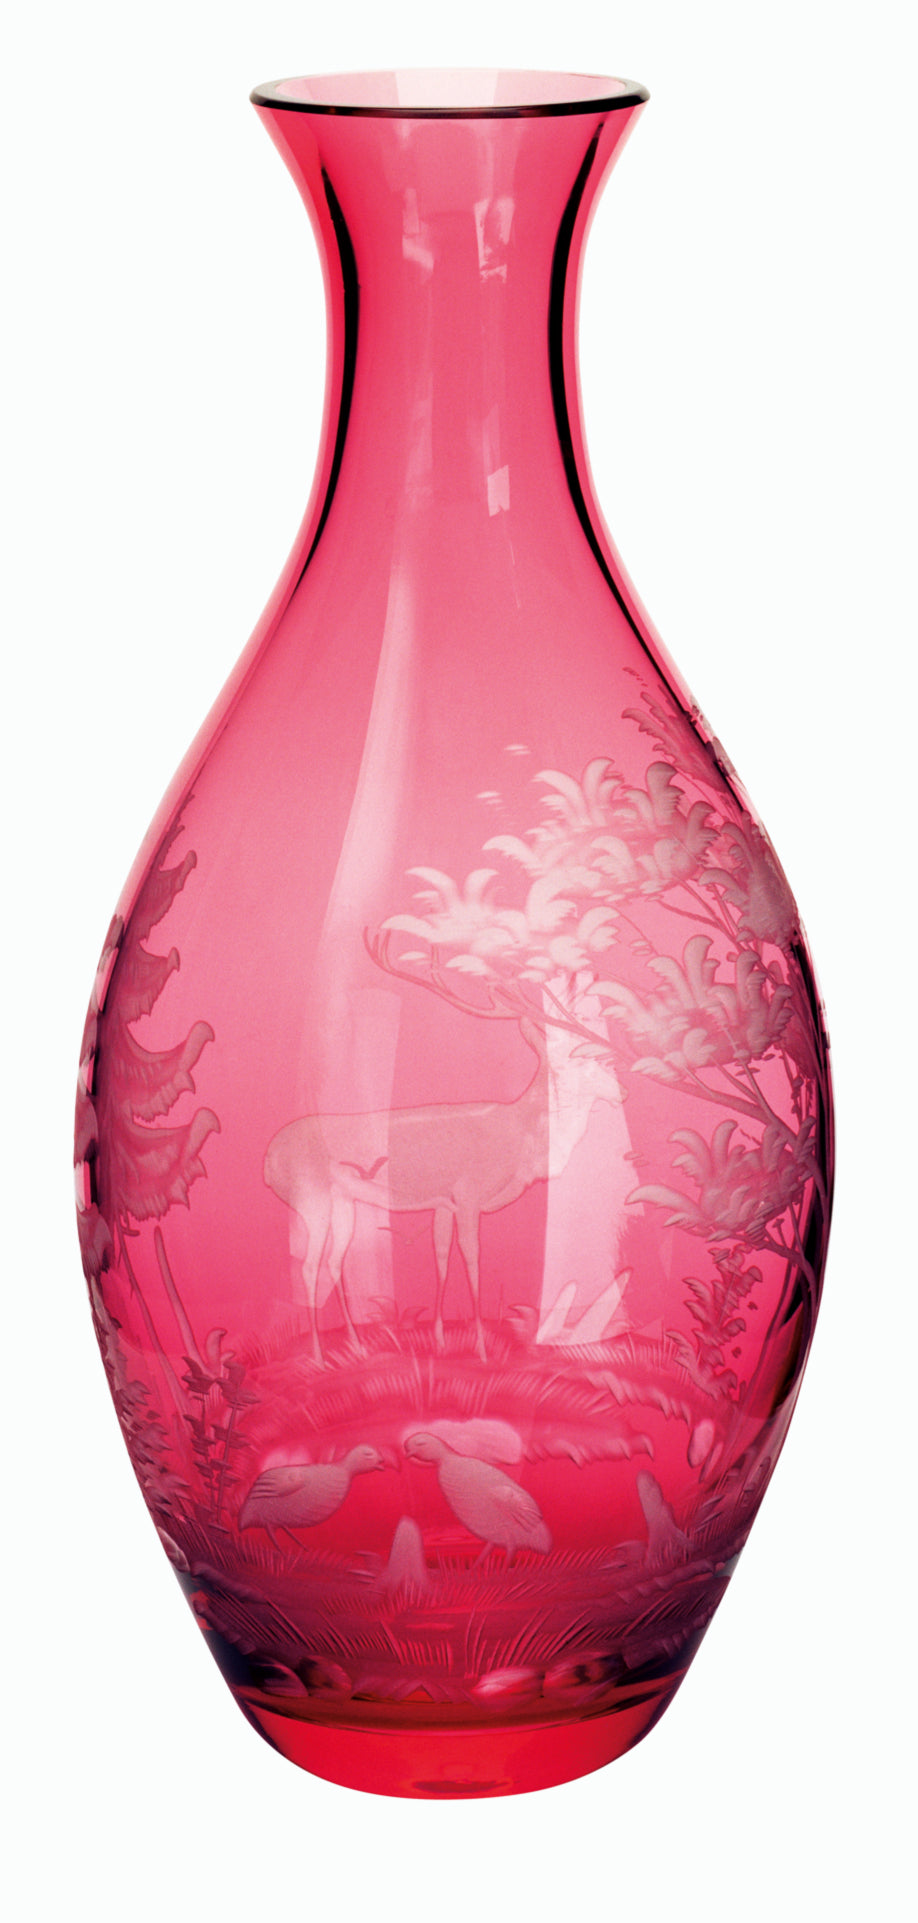 SCHLIERSEE rubin, Gravur 'Hirsch & Rebhuhn' - Flasche 0,7 l, 260 mm